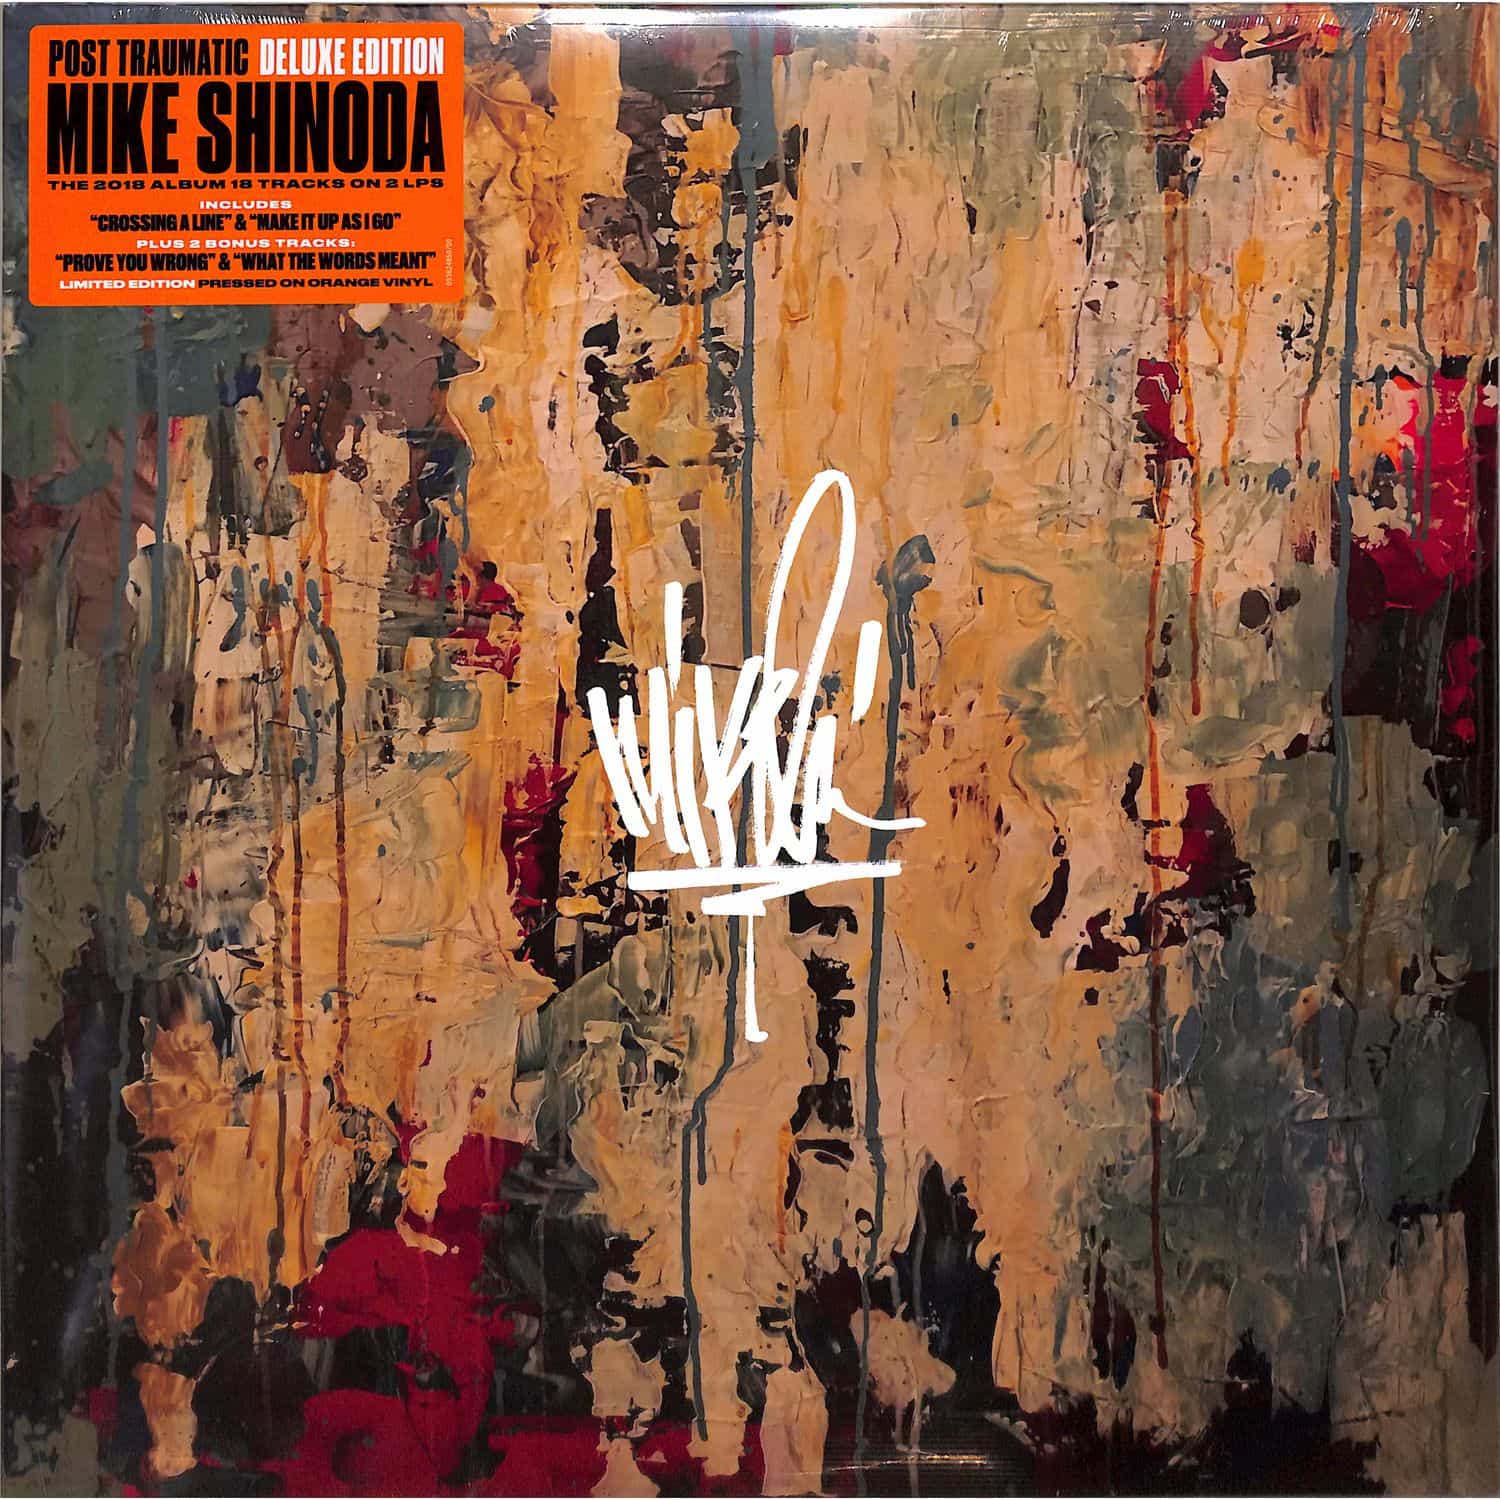 Mike Shinoda - POST TRAUMATICC